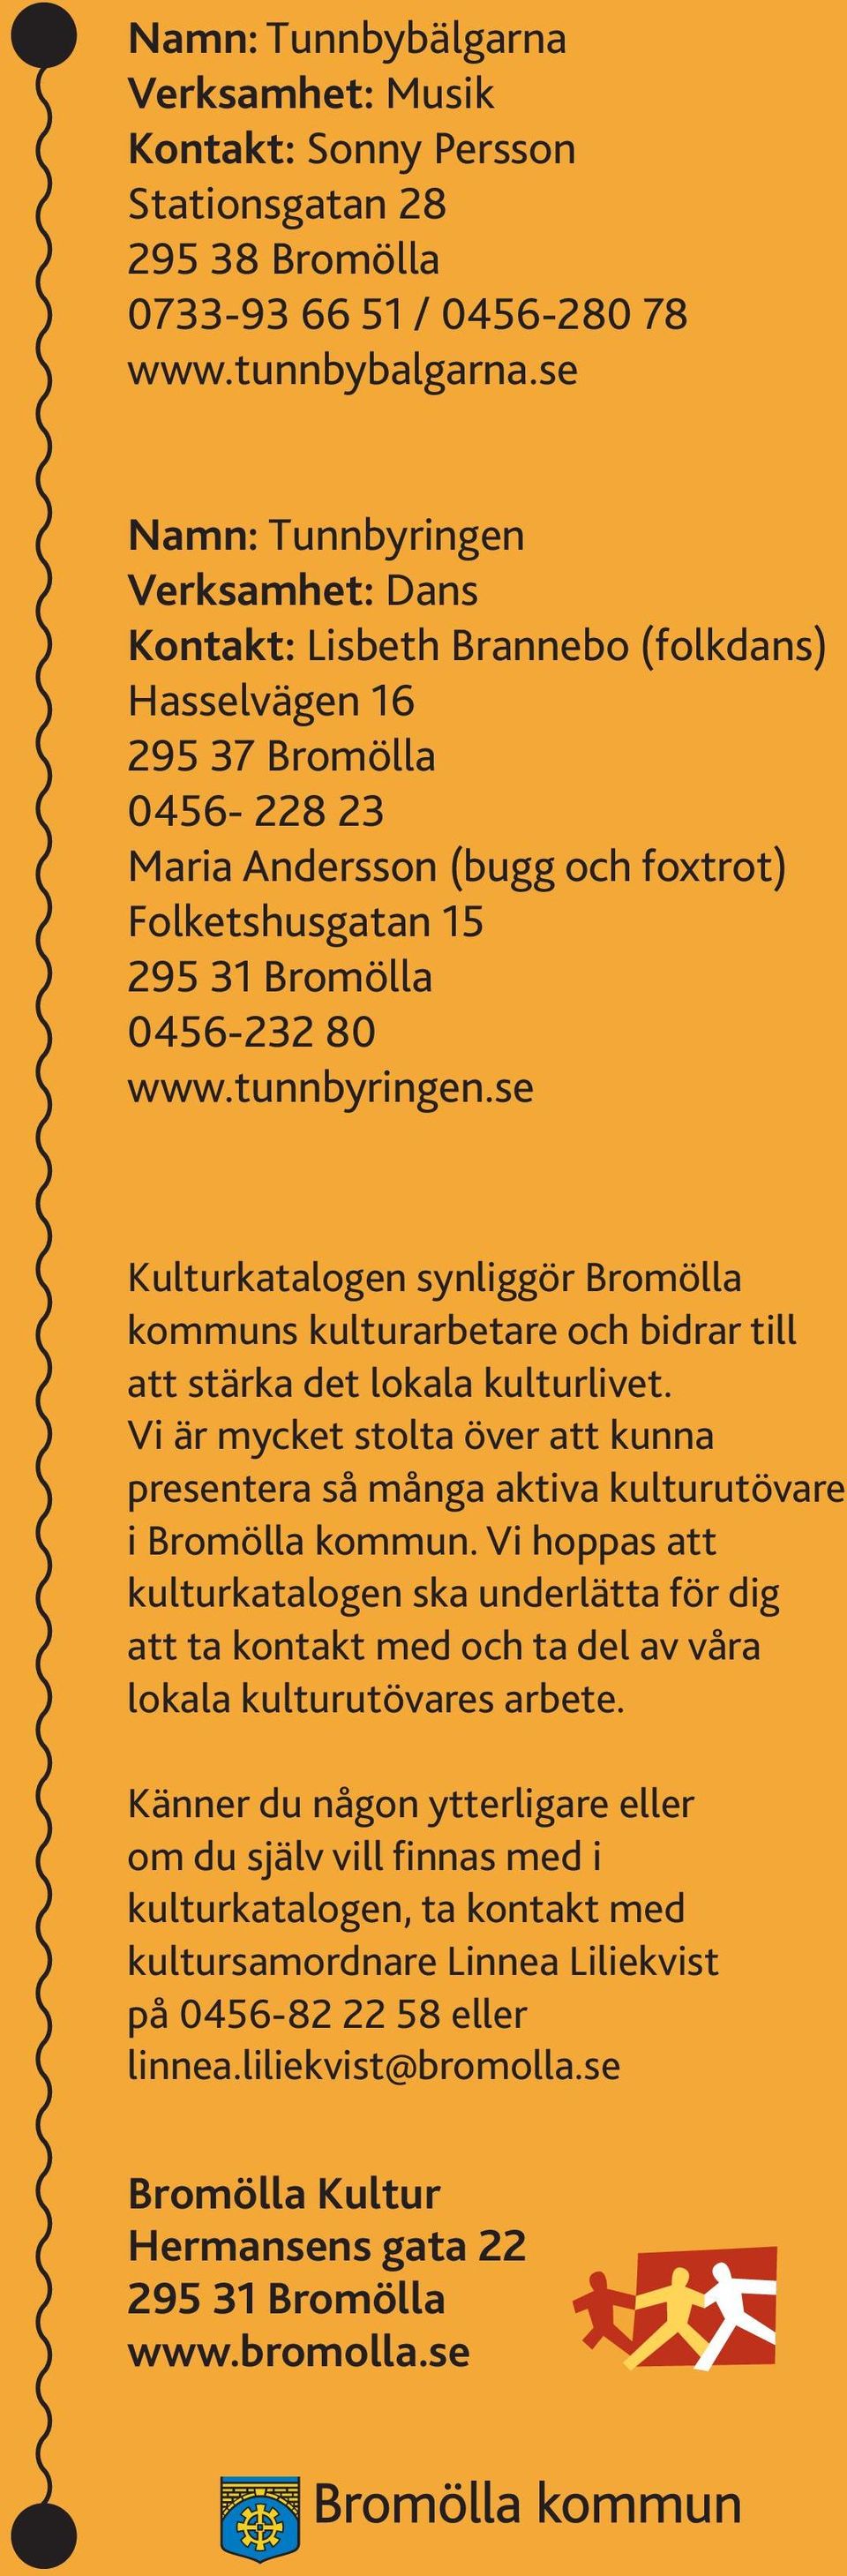 80 www.tunnbyringen.se Kulturkatalogen synliggör Bromölla kommuns kulturarbetare och bidrar till att stärka det lokala kulturlivet.